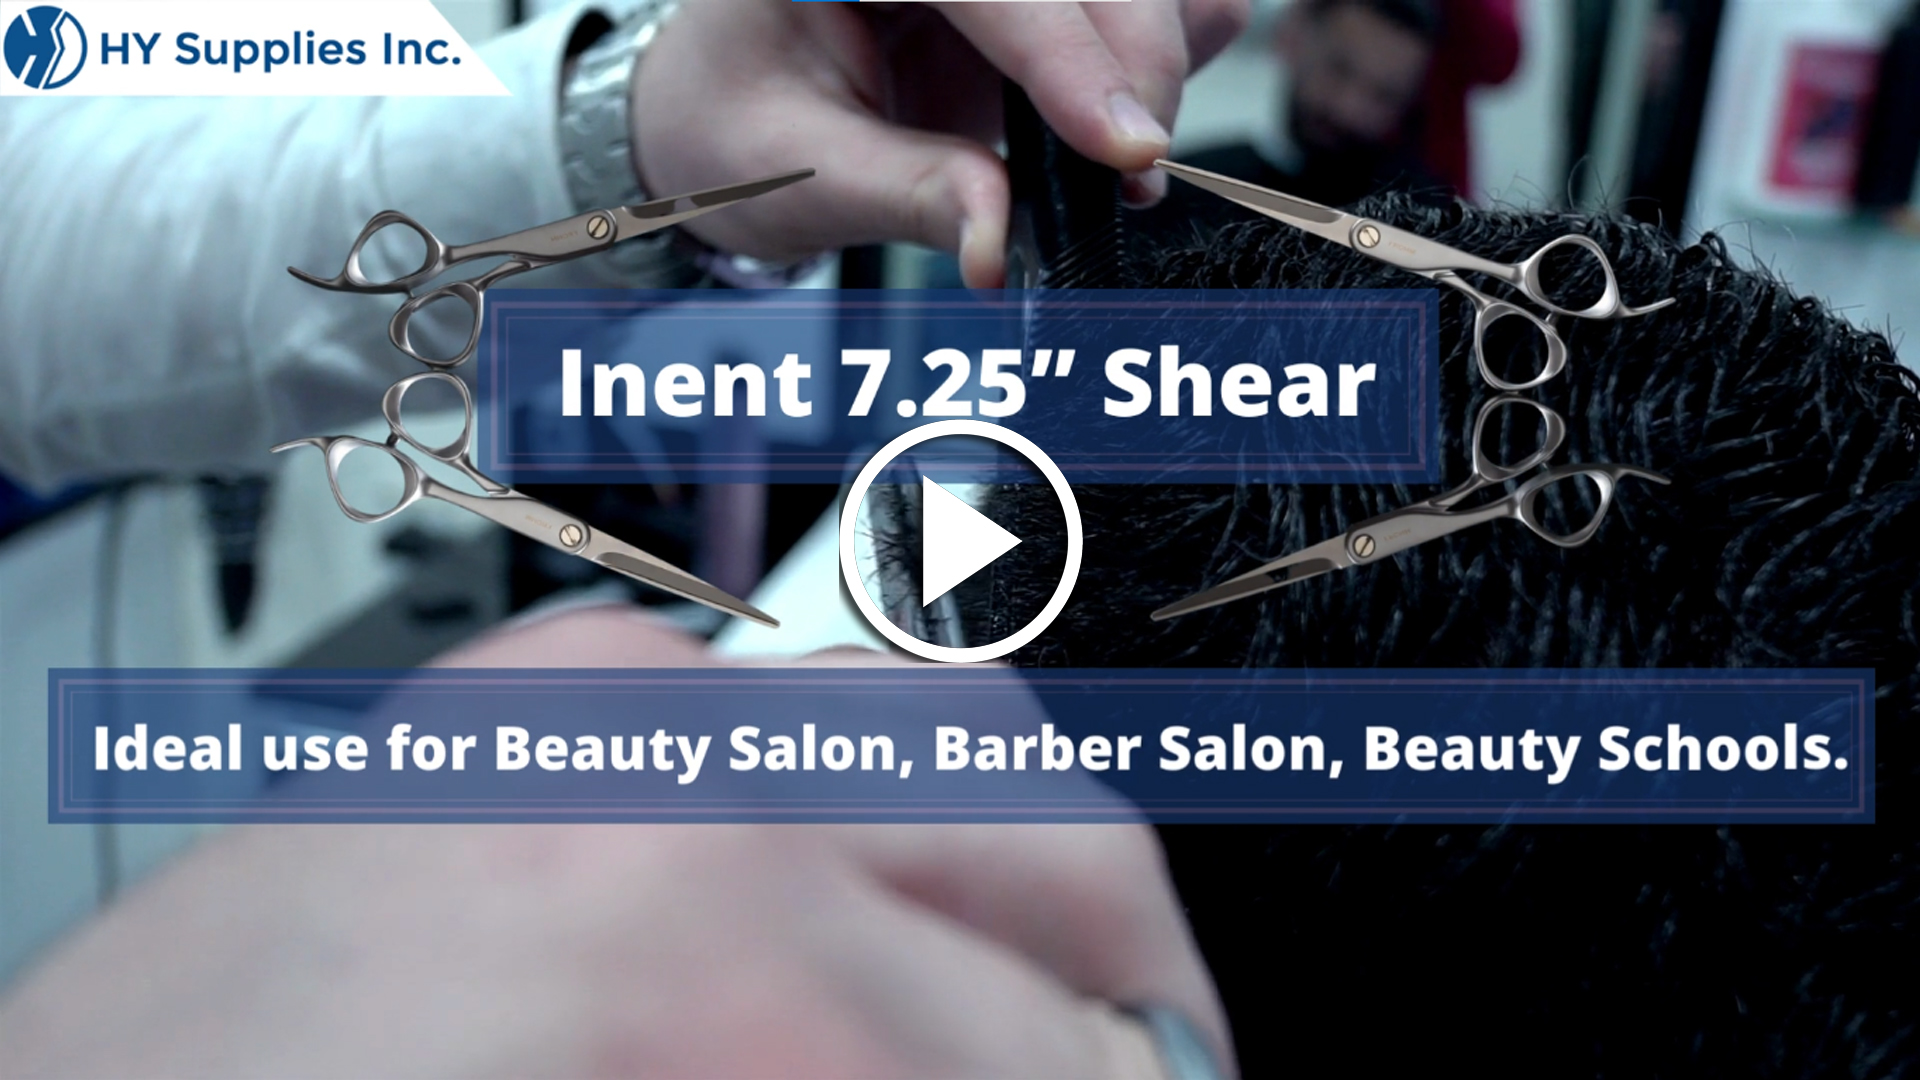 Inent 7.25” Shear